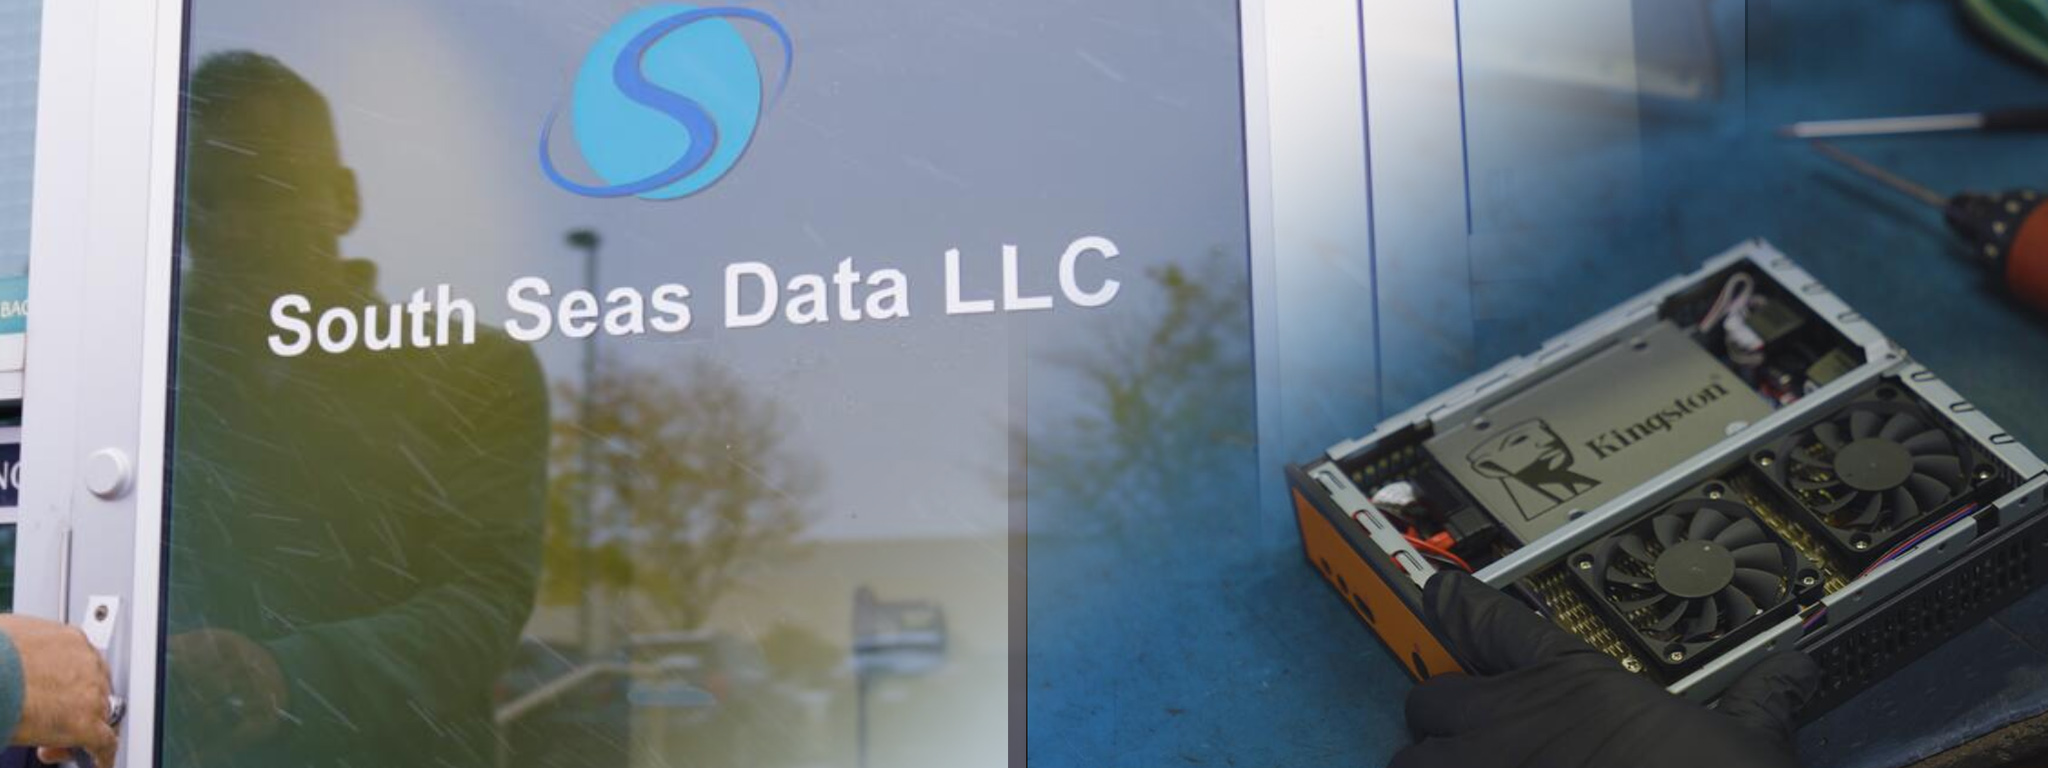 ประตูด้านหน้าของสำนักงานใหญ่ของ South Seas Data LLC และภาพระบบการทำงานซูมด้านหน้าให้เห็น SSD จาก Kingston